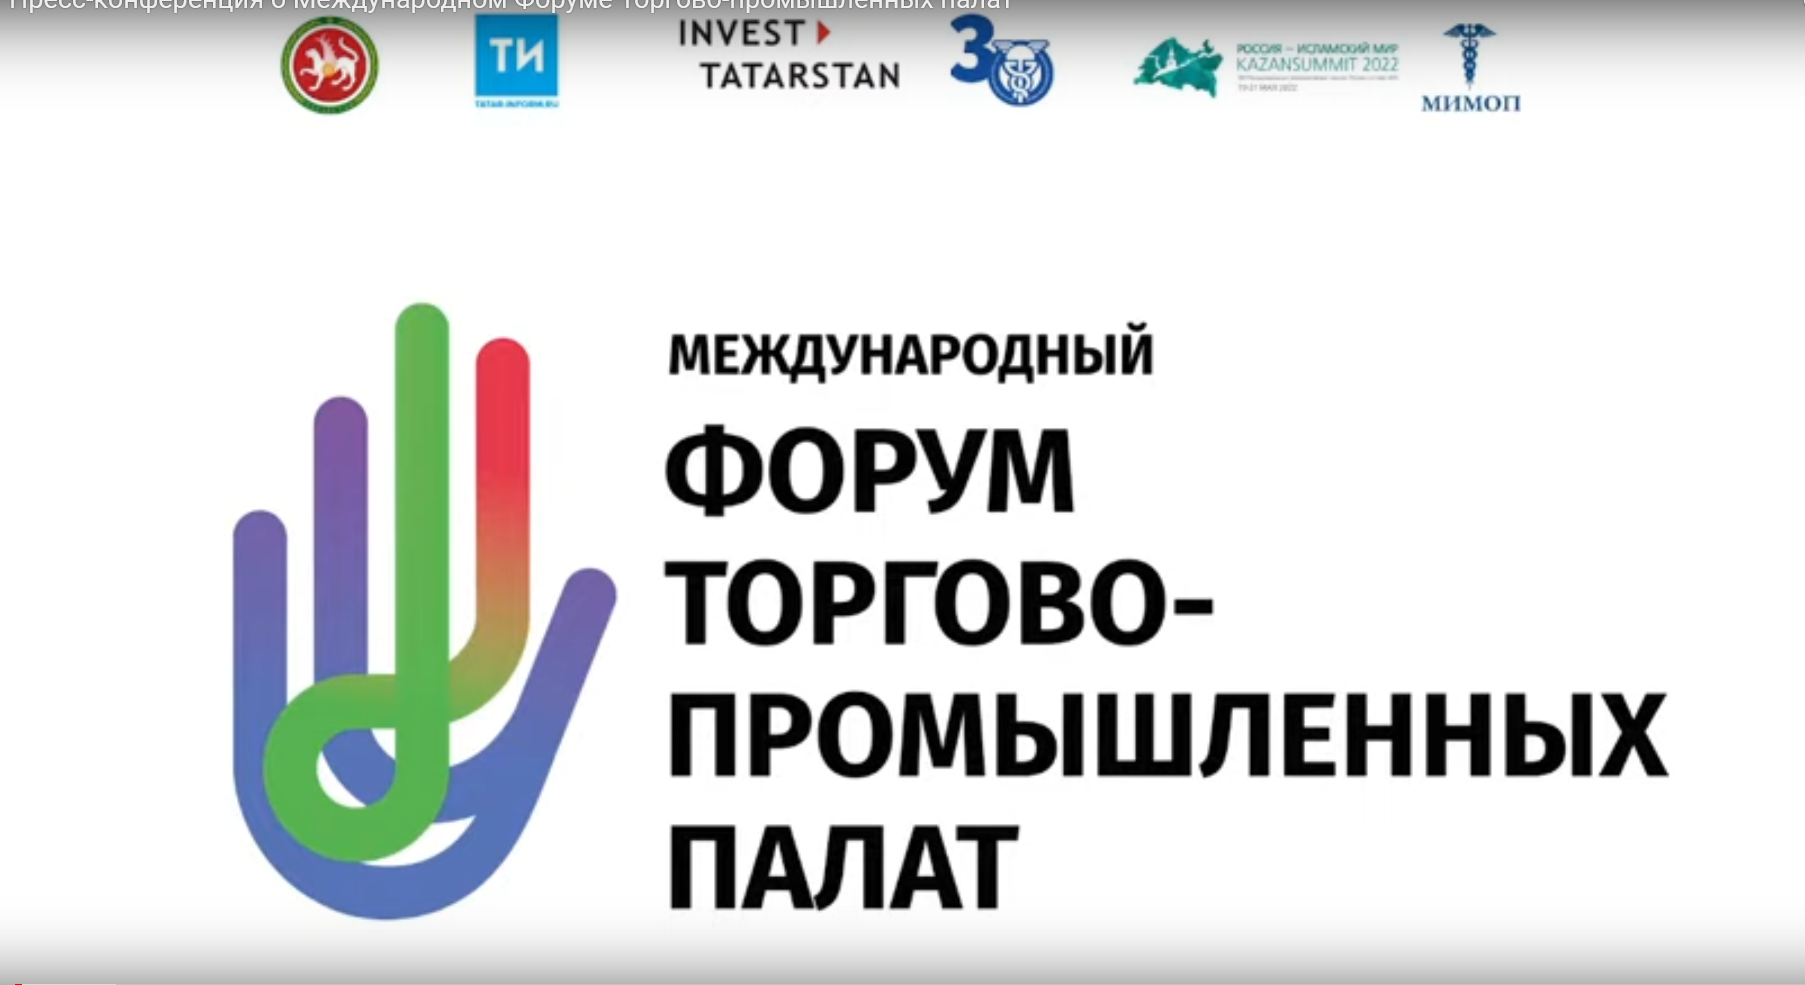 Президент МТПП Владимир Платонов принимает участие в Международном форуме торгово-промышленных палат